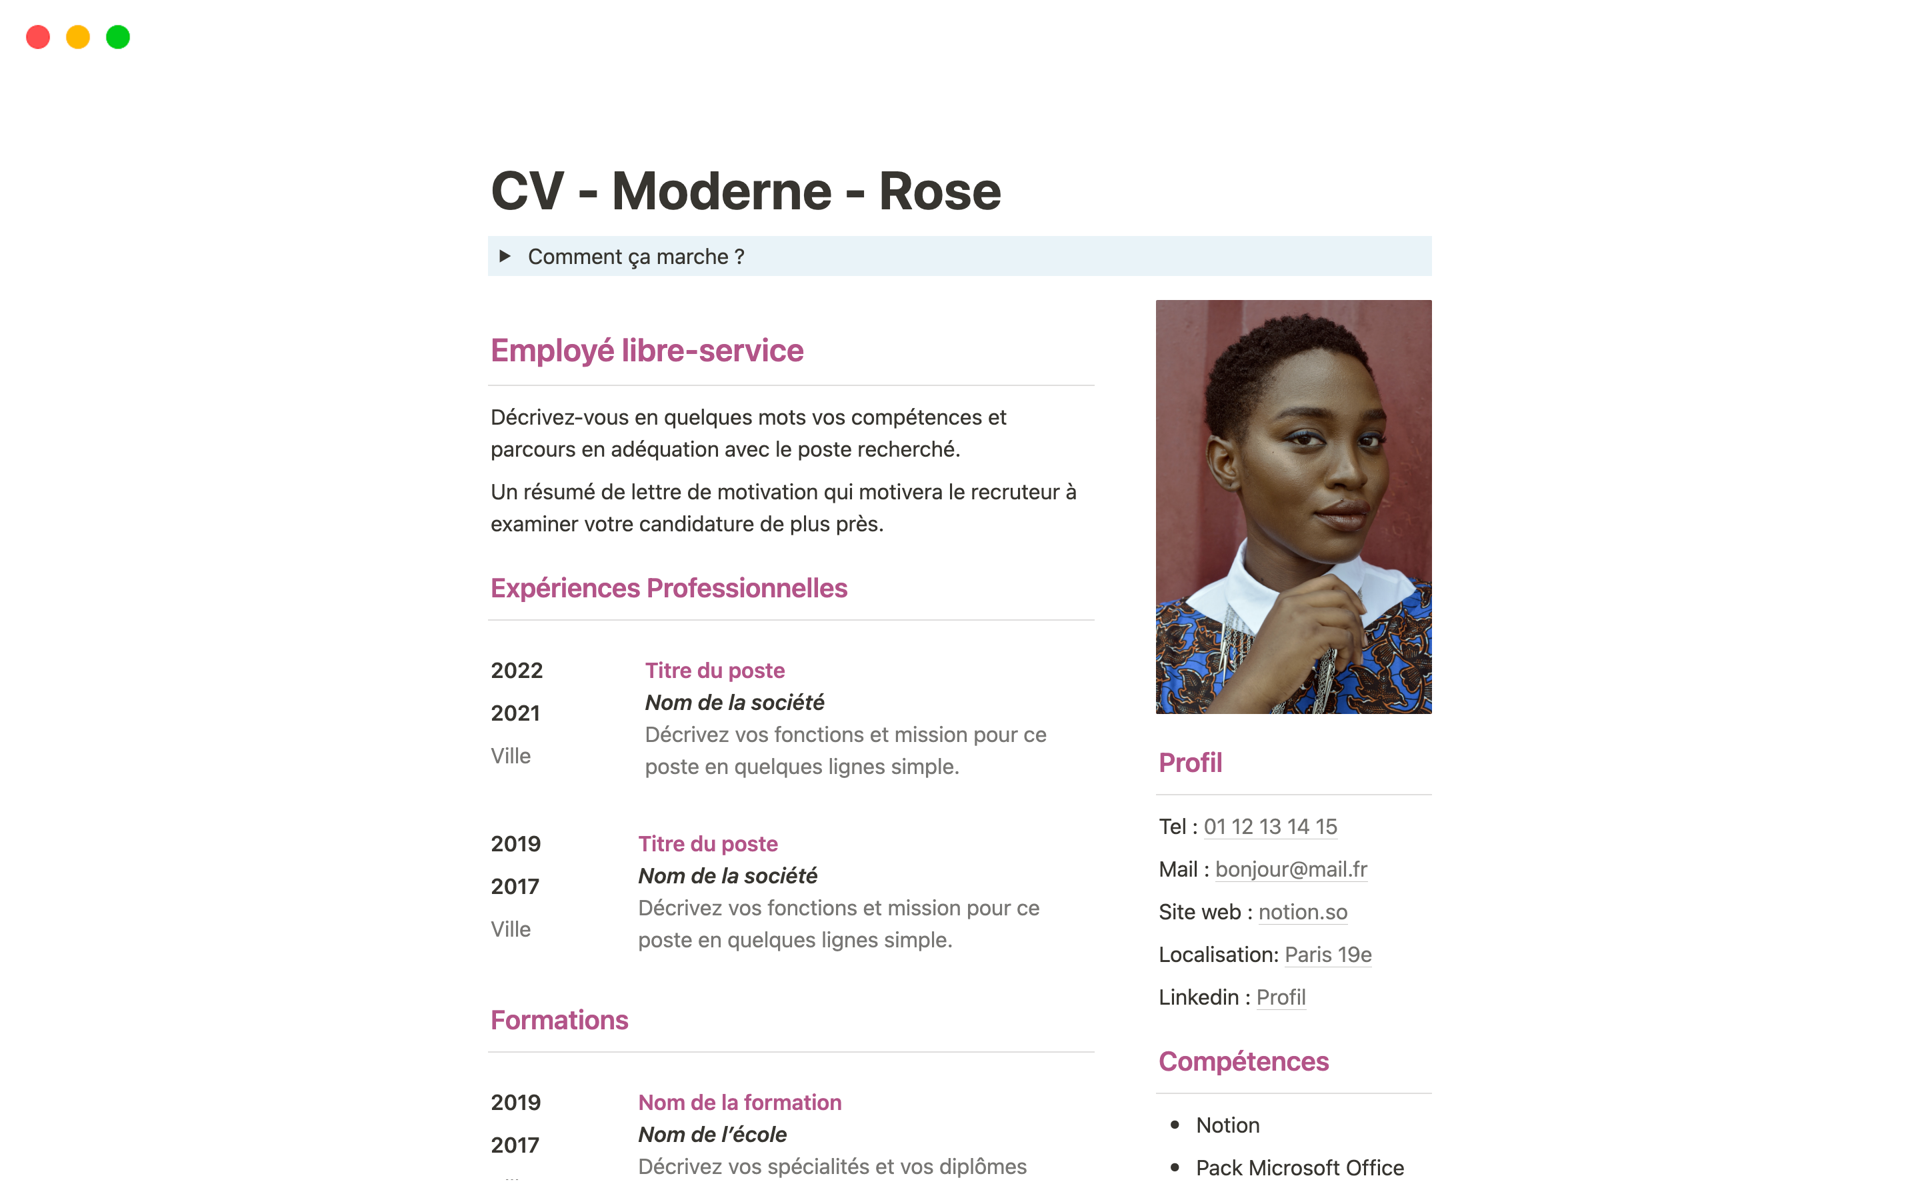 Uma prévia do modelo para CV - Moderne - Rose